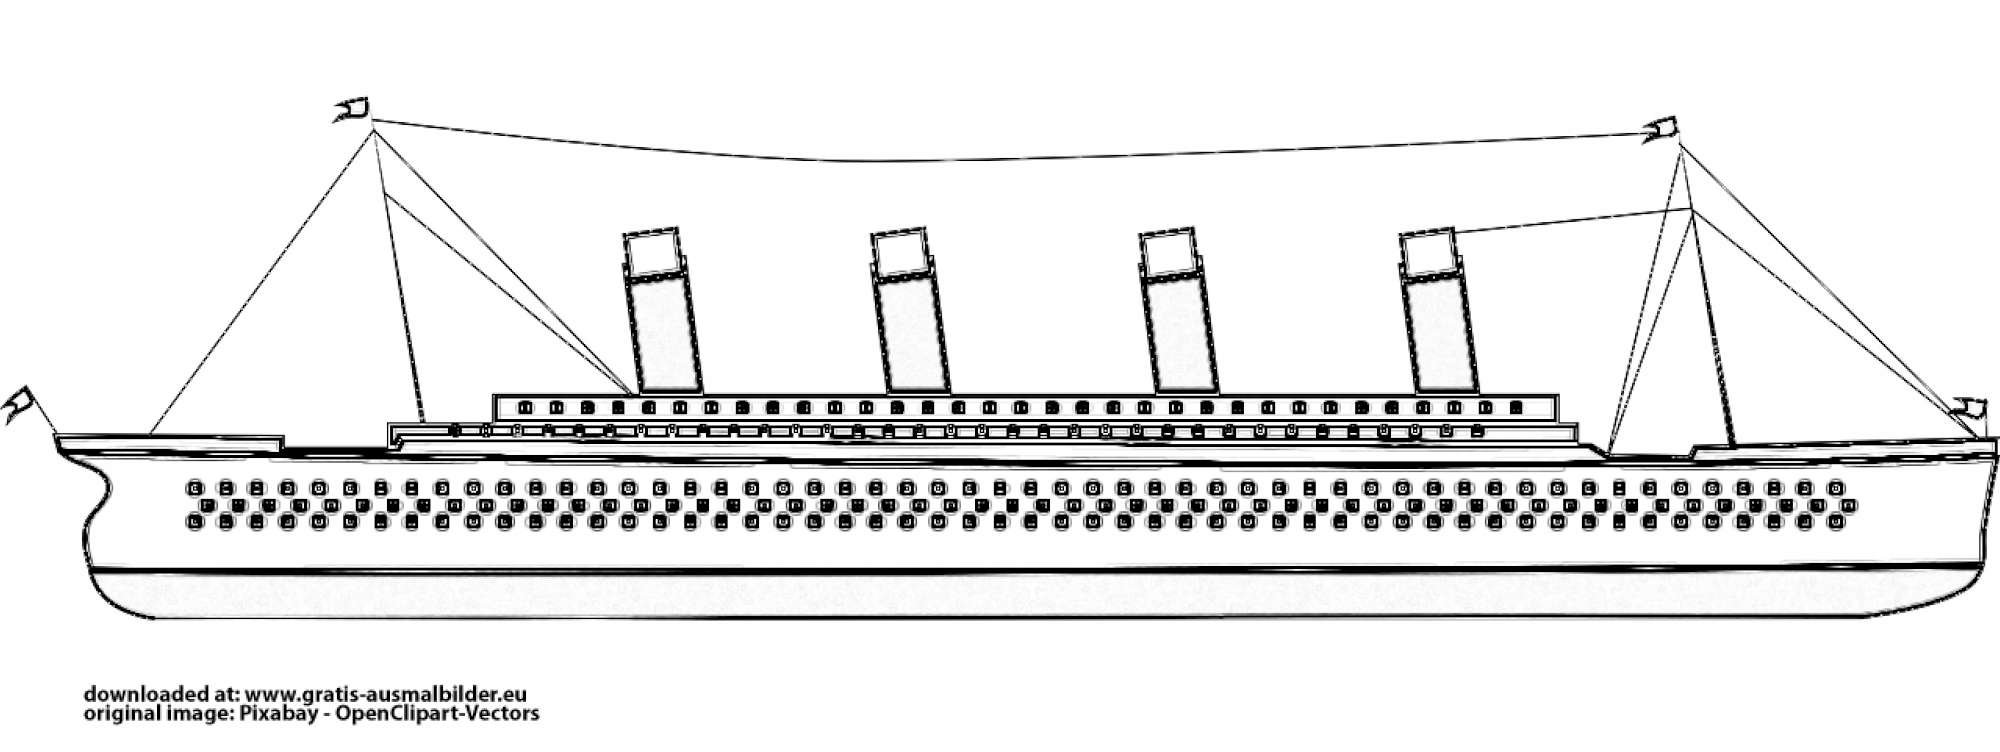 Титаник схематичный рисунок вид сбоку